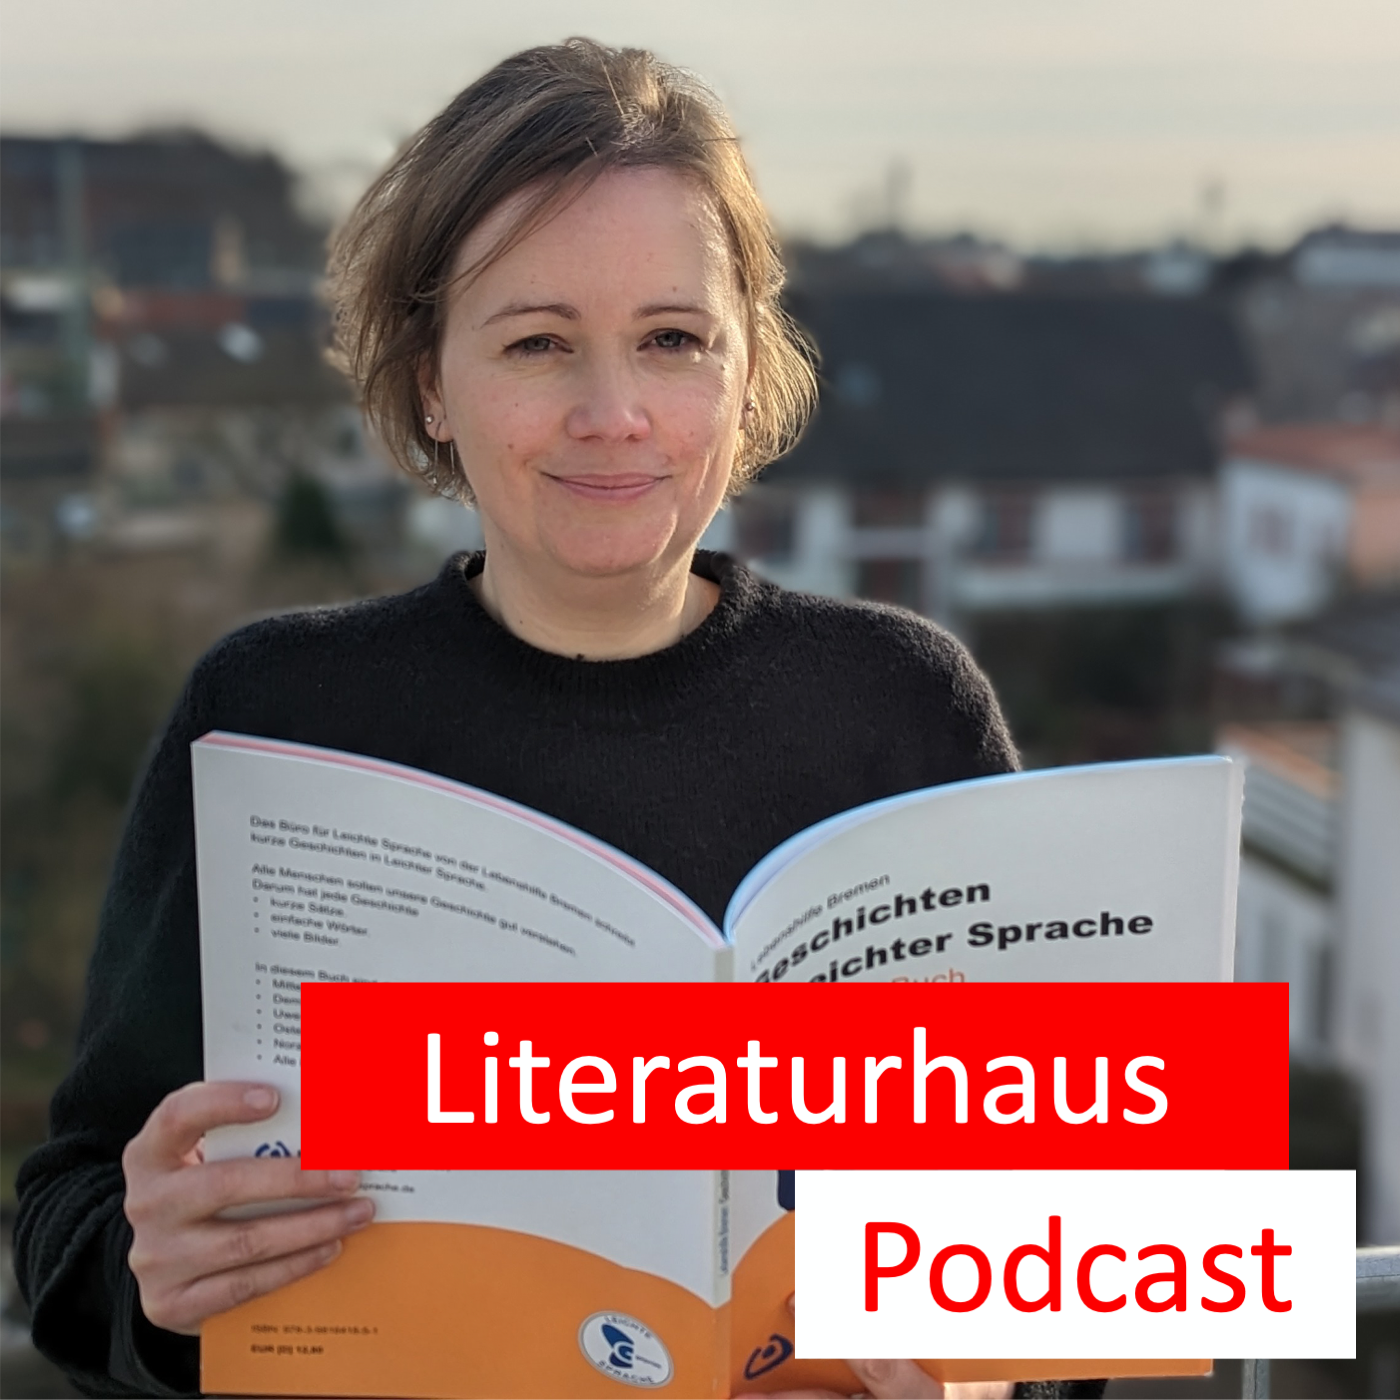 Porträtbild von Marion Klanke mit dem Literaturhaus Podcast Schriftzug 